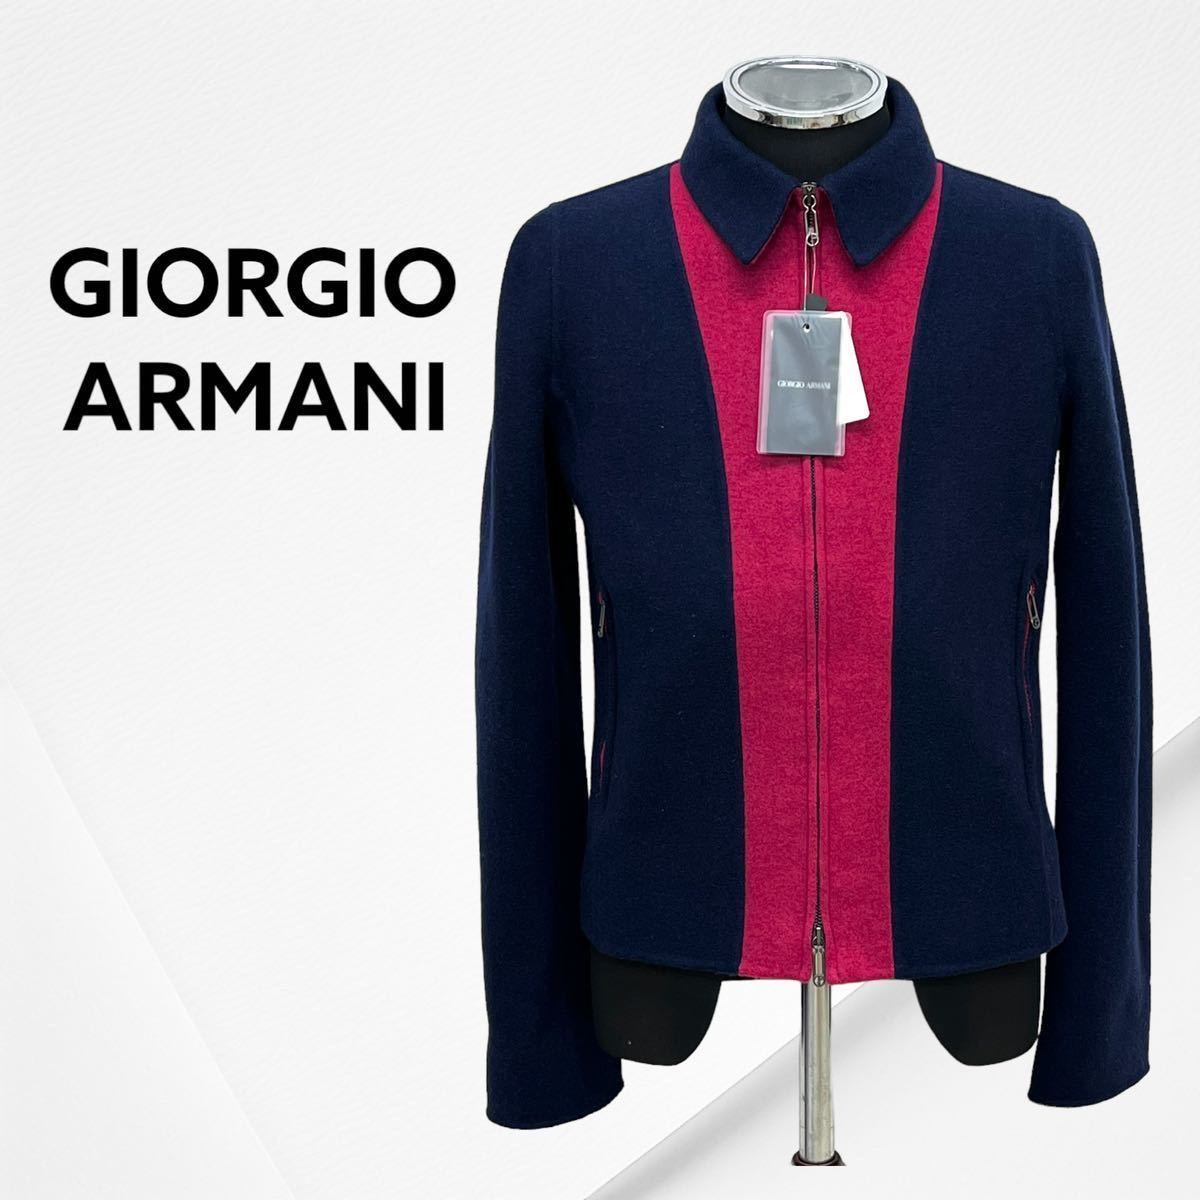 タグ付き GIORGIO ARMANI ジョルジオ アルマーニ ウール混 バイカラー ジップアップ ジャケット レディース